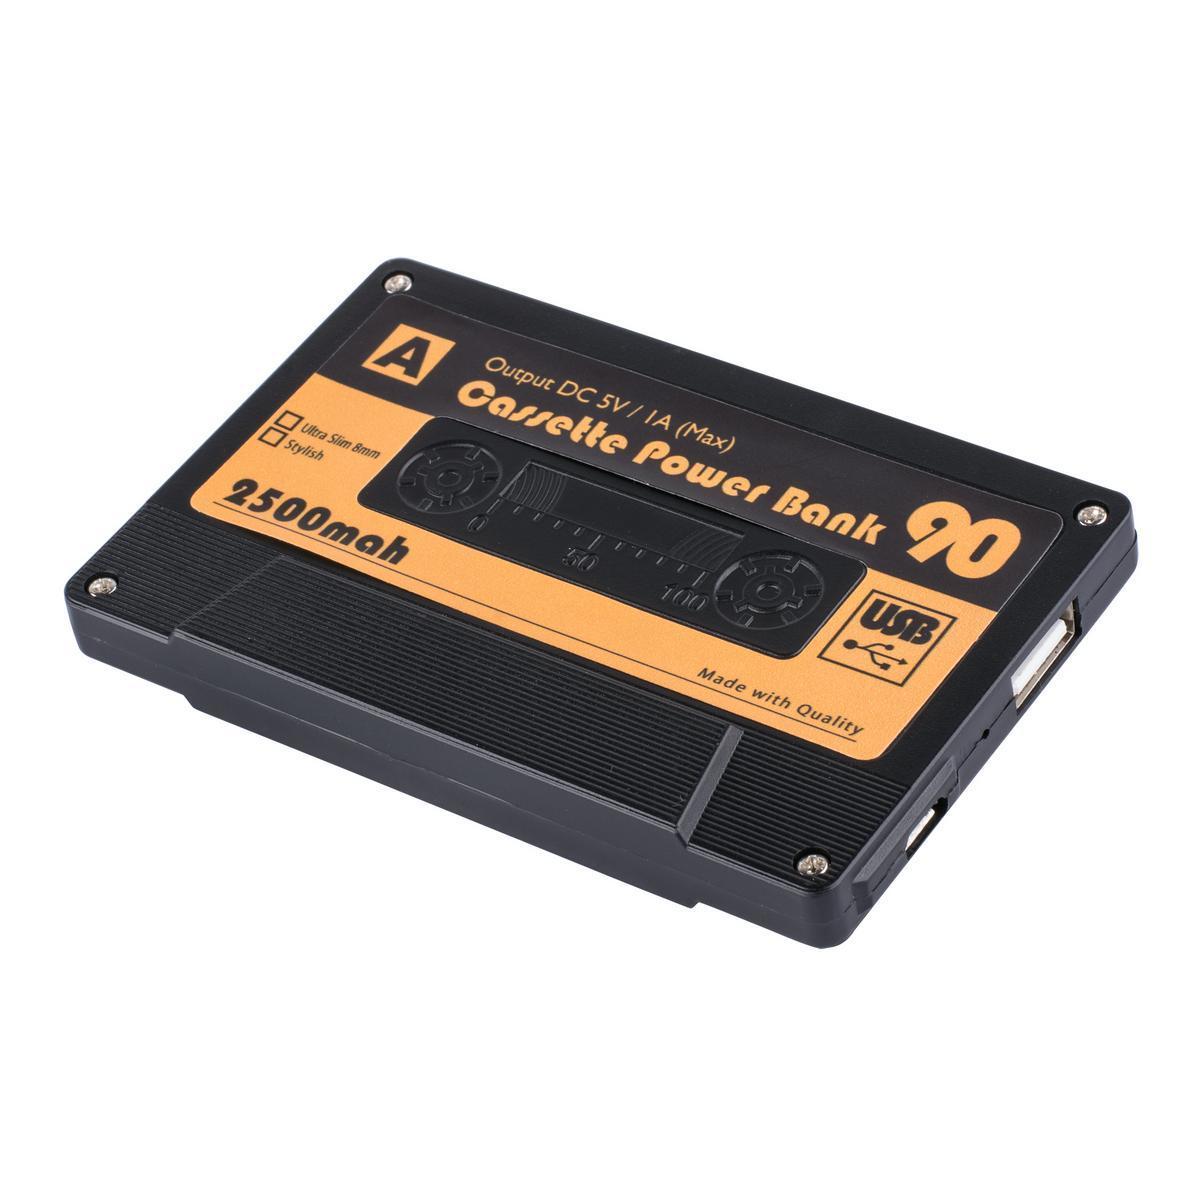 Batterie externe cassette - 10 x 6,4 x H 1,2 cm